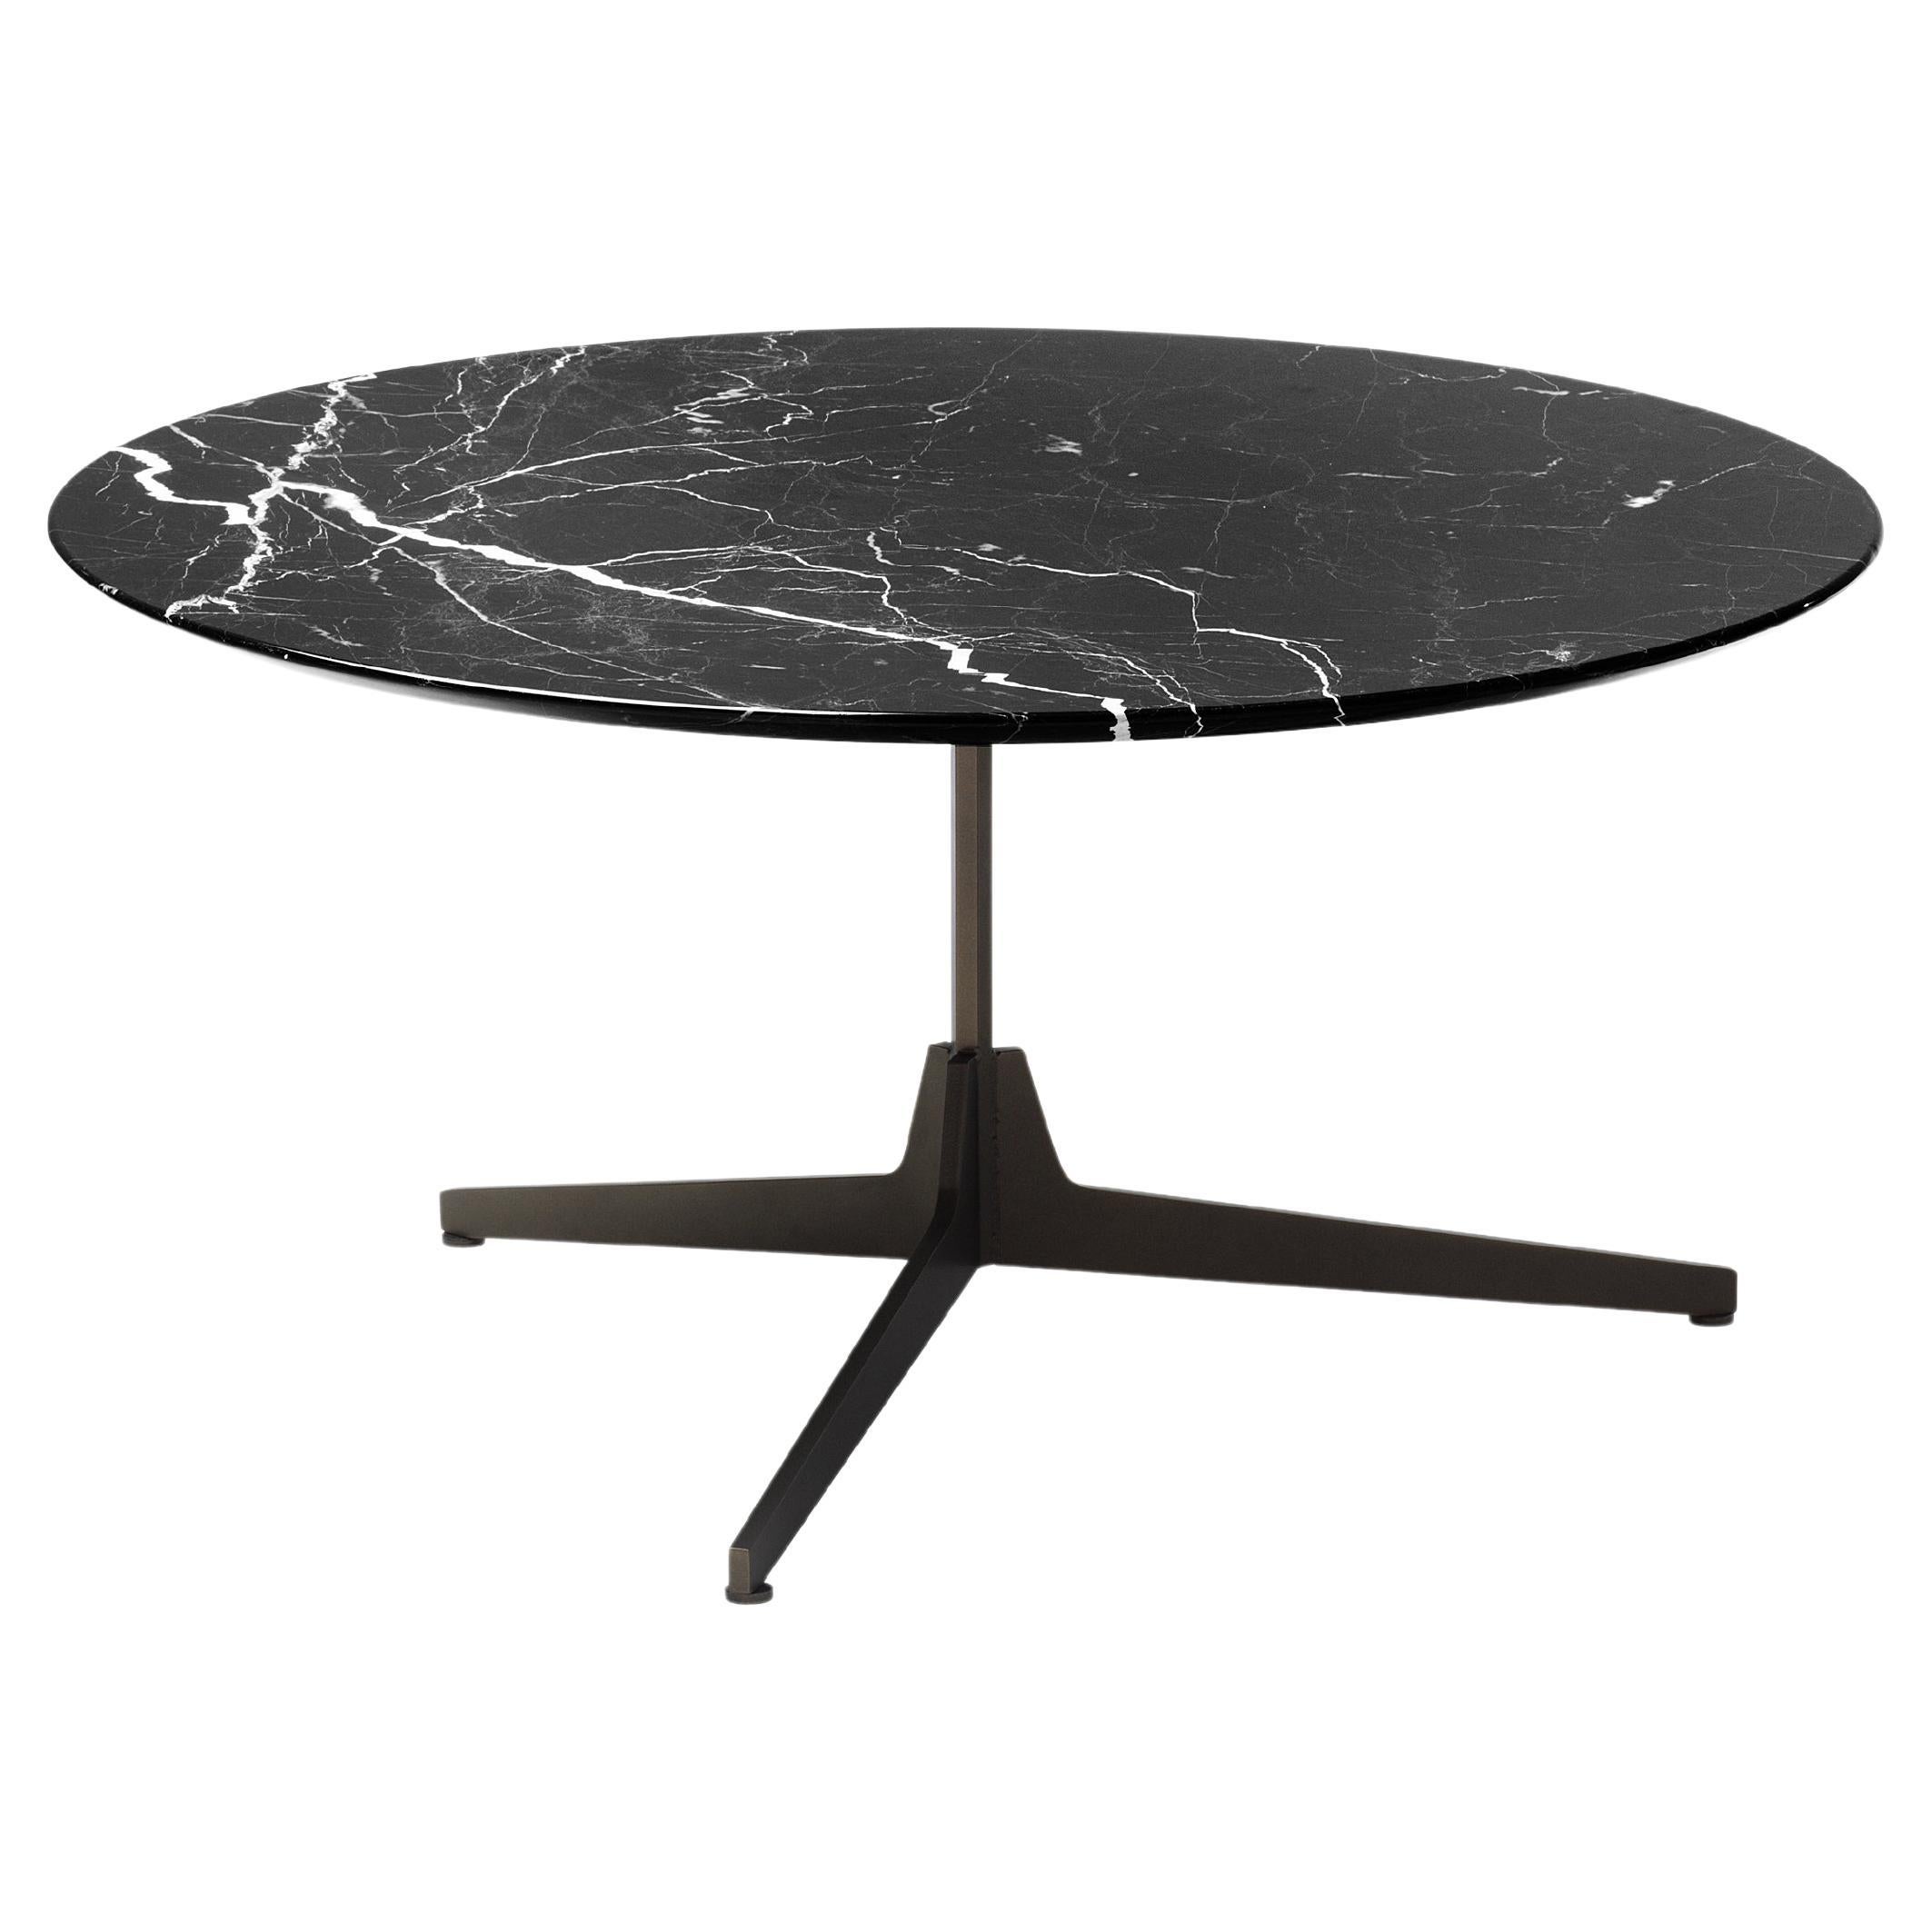 Grande table basse ronde Hexa avec plateau en marbre Noir et base noire mate, Enzo Berti